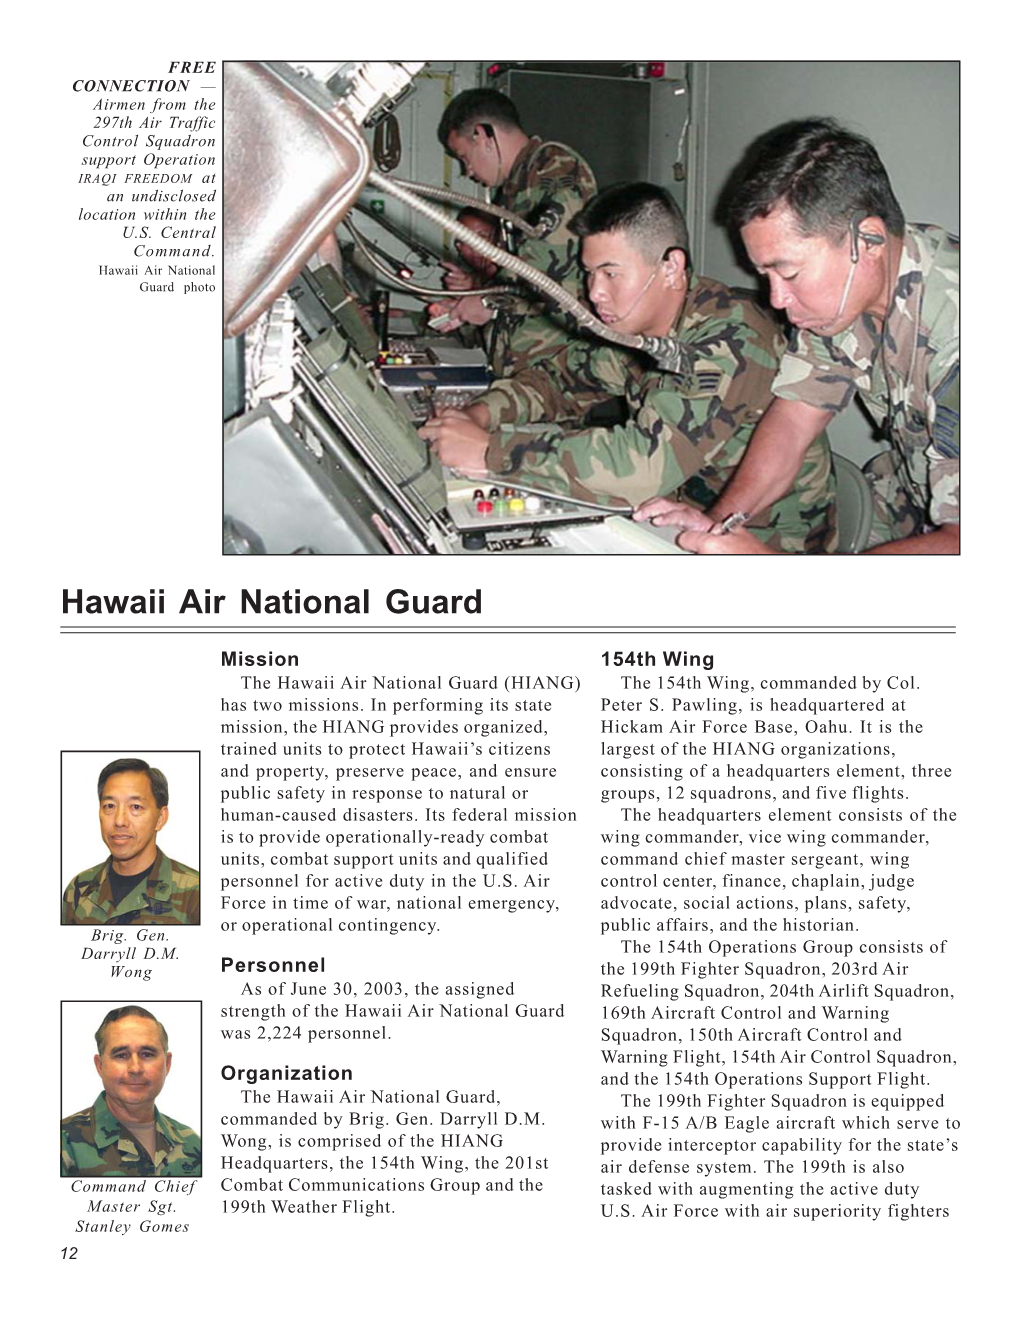 Hawaii Air National Guard Photo